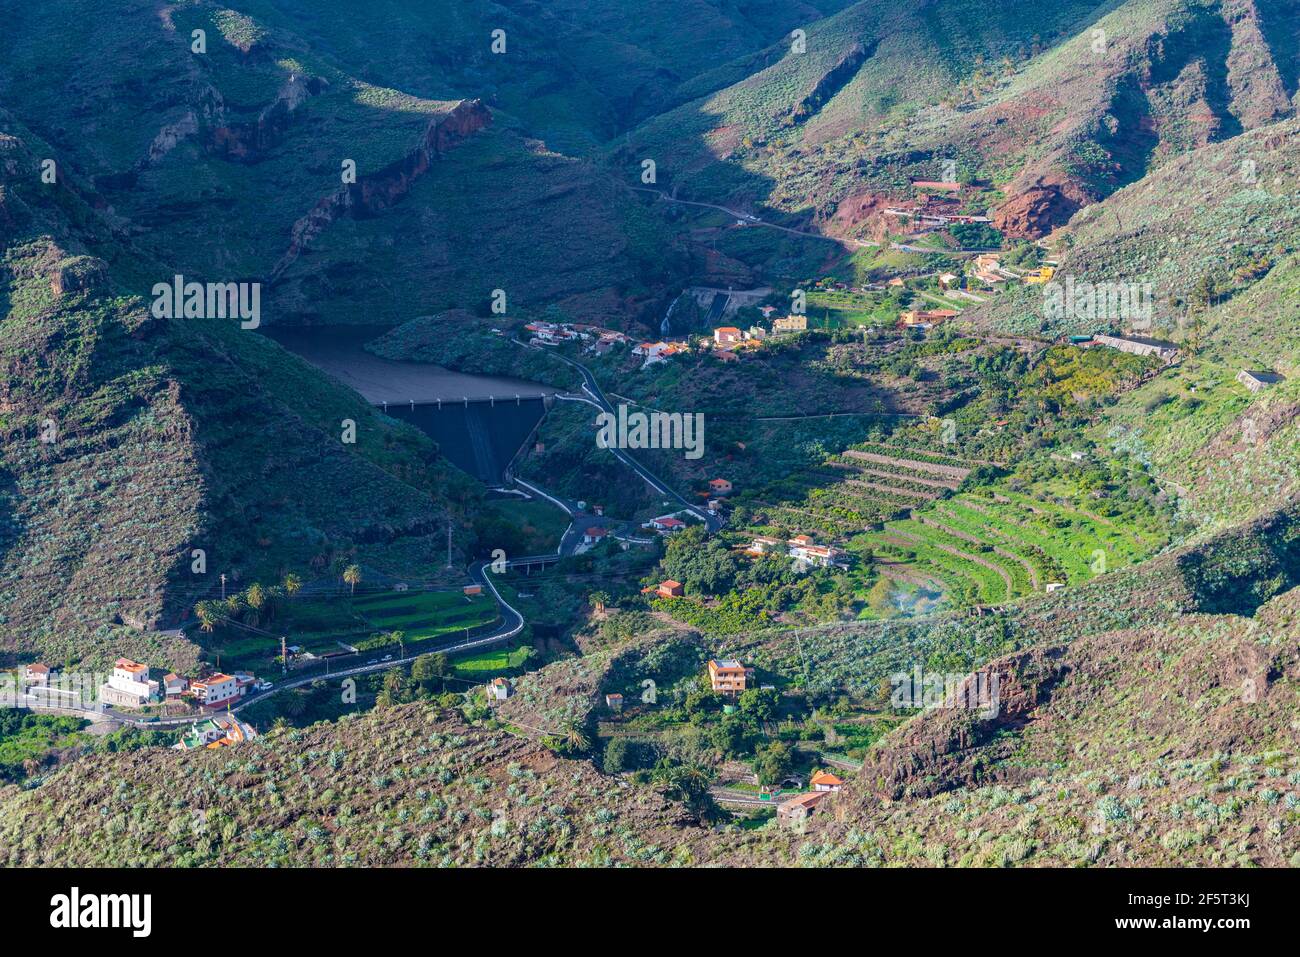 Aerial view of La Gomera from Mirador de Manaderos lookout, Canary Islands, Spain. Stock Photo